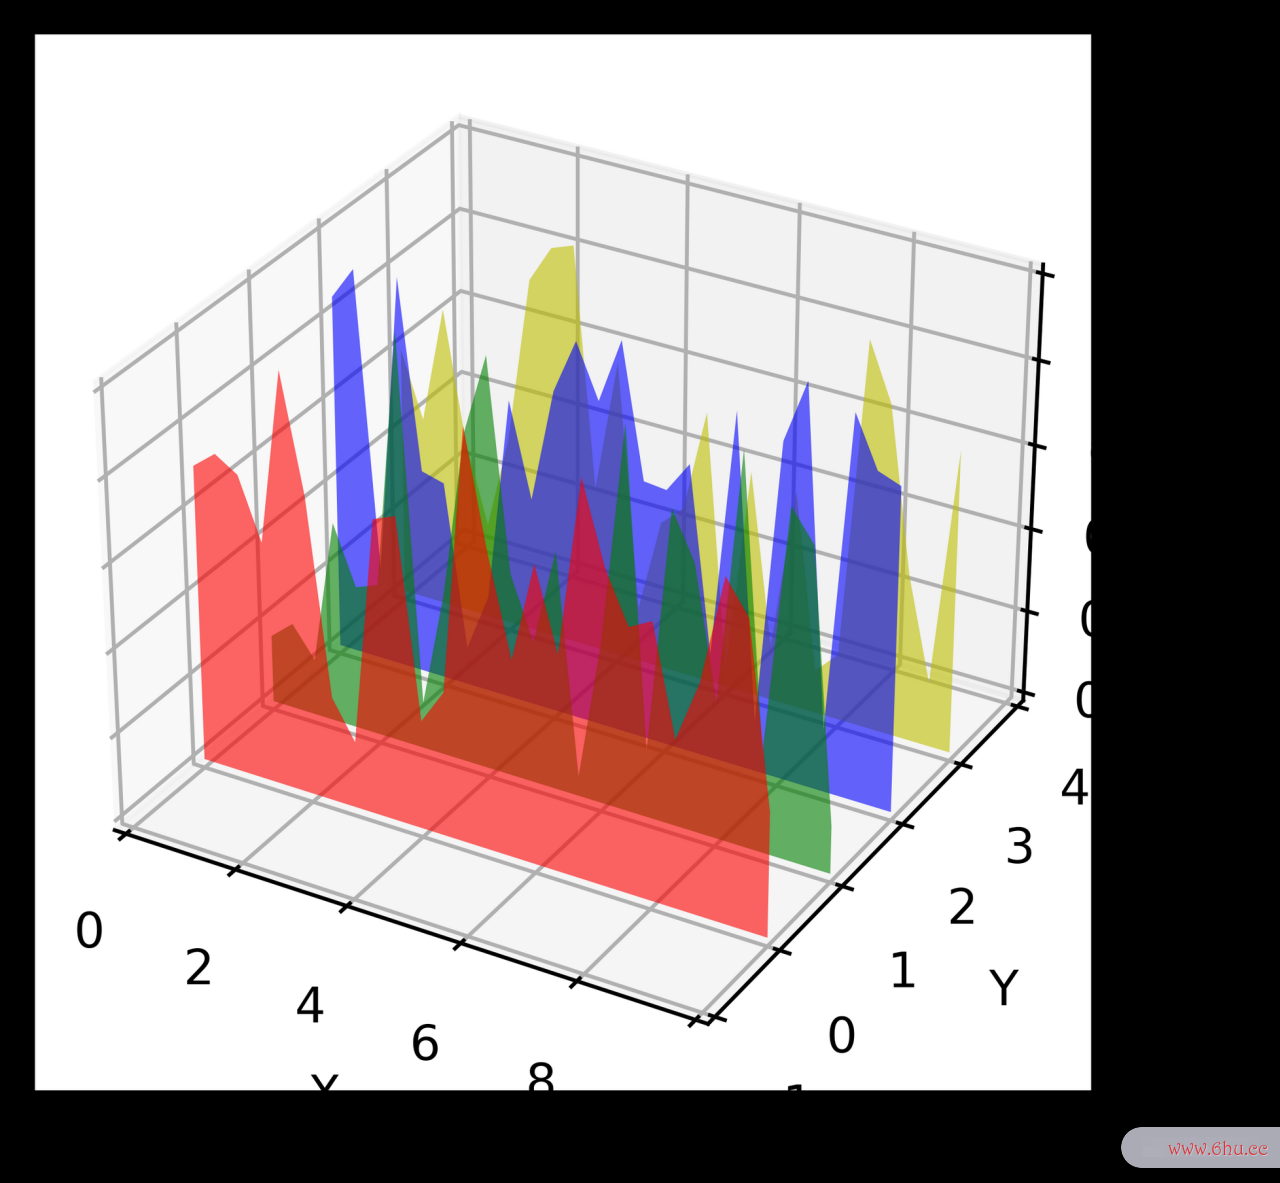 数据可视化之美 -- 以Matlab、Python为工具